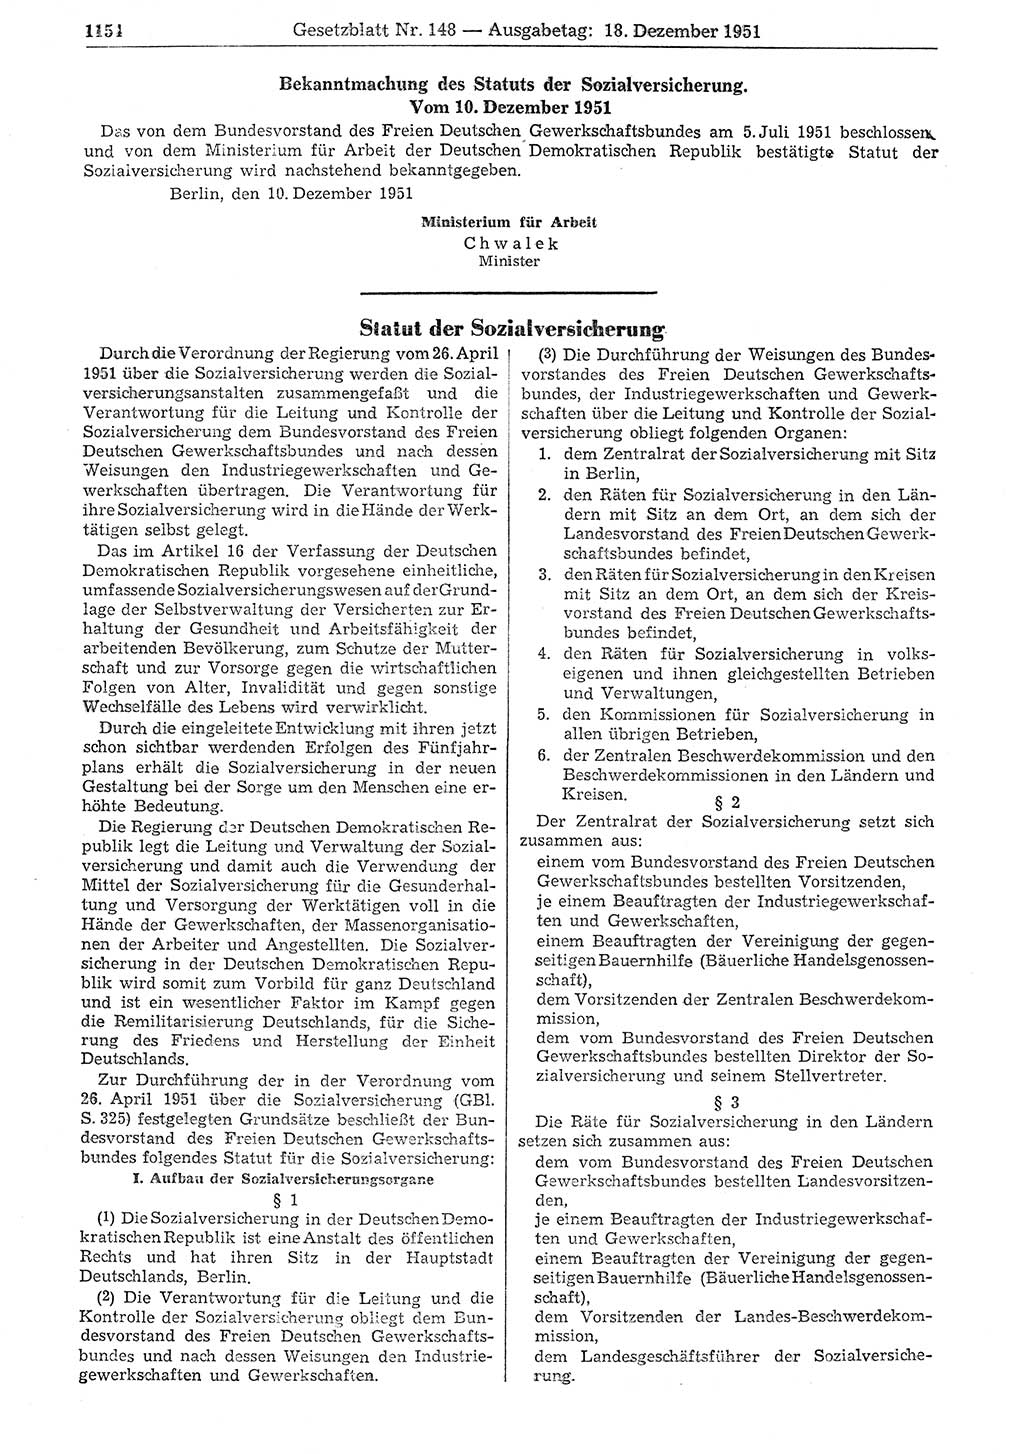 Gesetzblatt (GBl.) der Deutschen Demokratischen Republik (DDR) 1951, Seite 1154 (GBl. DDR 1951, S. 1154)